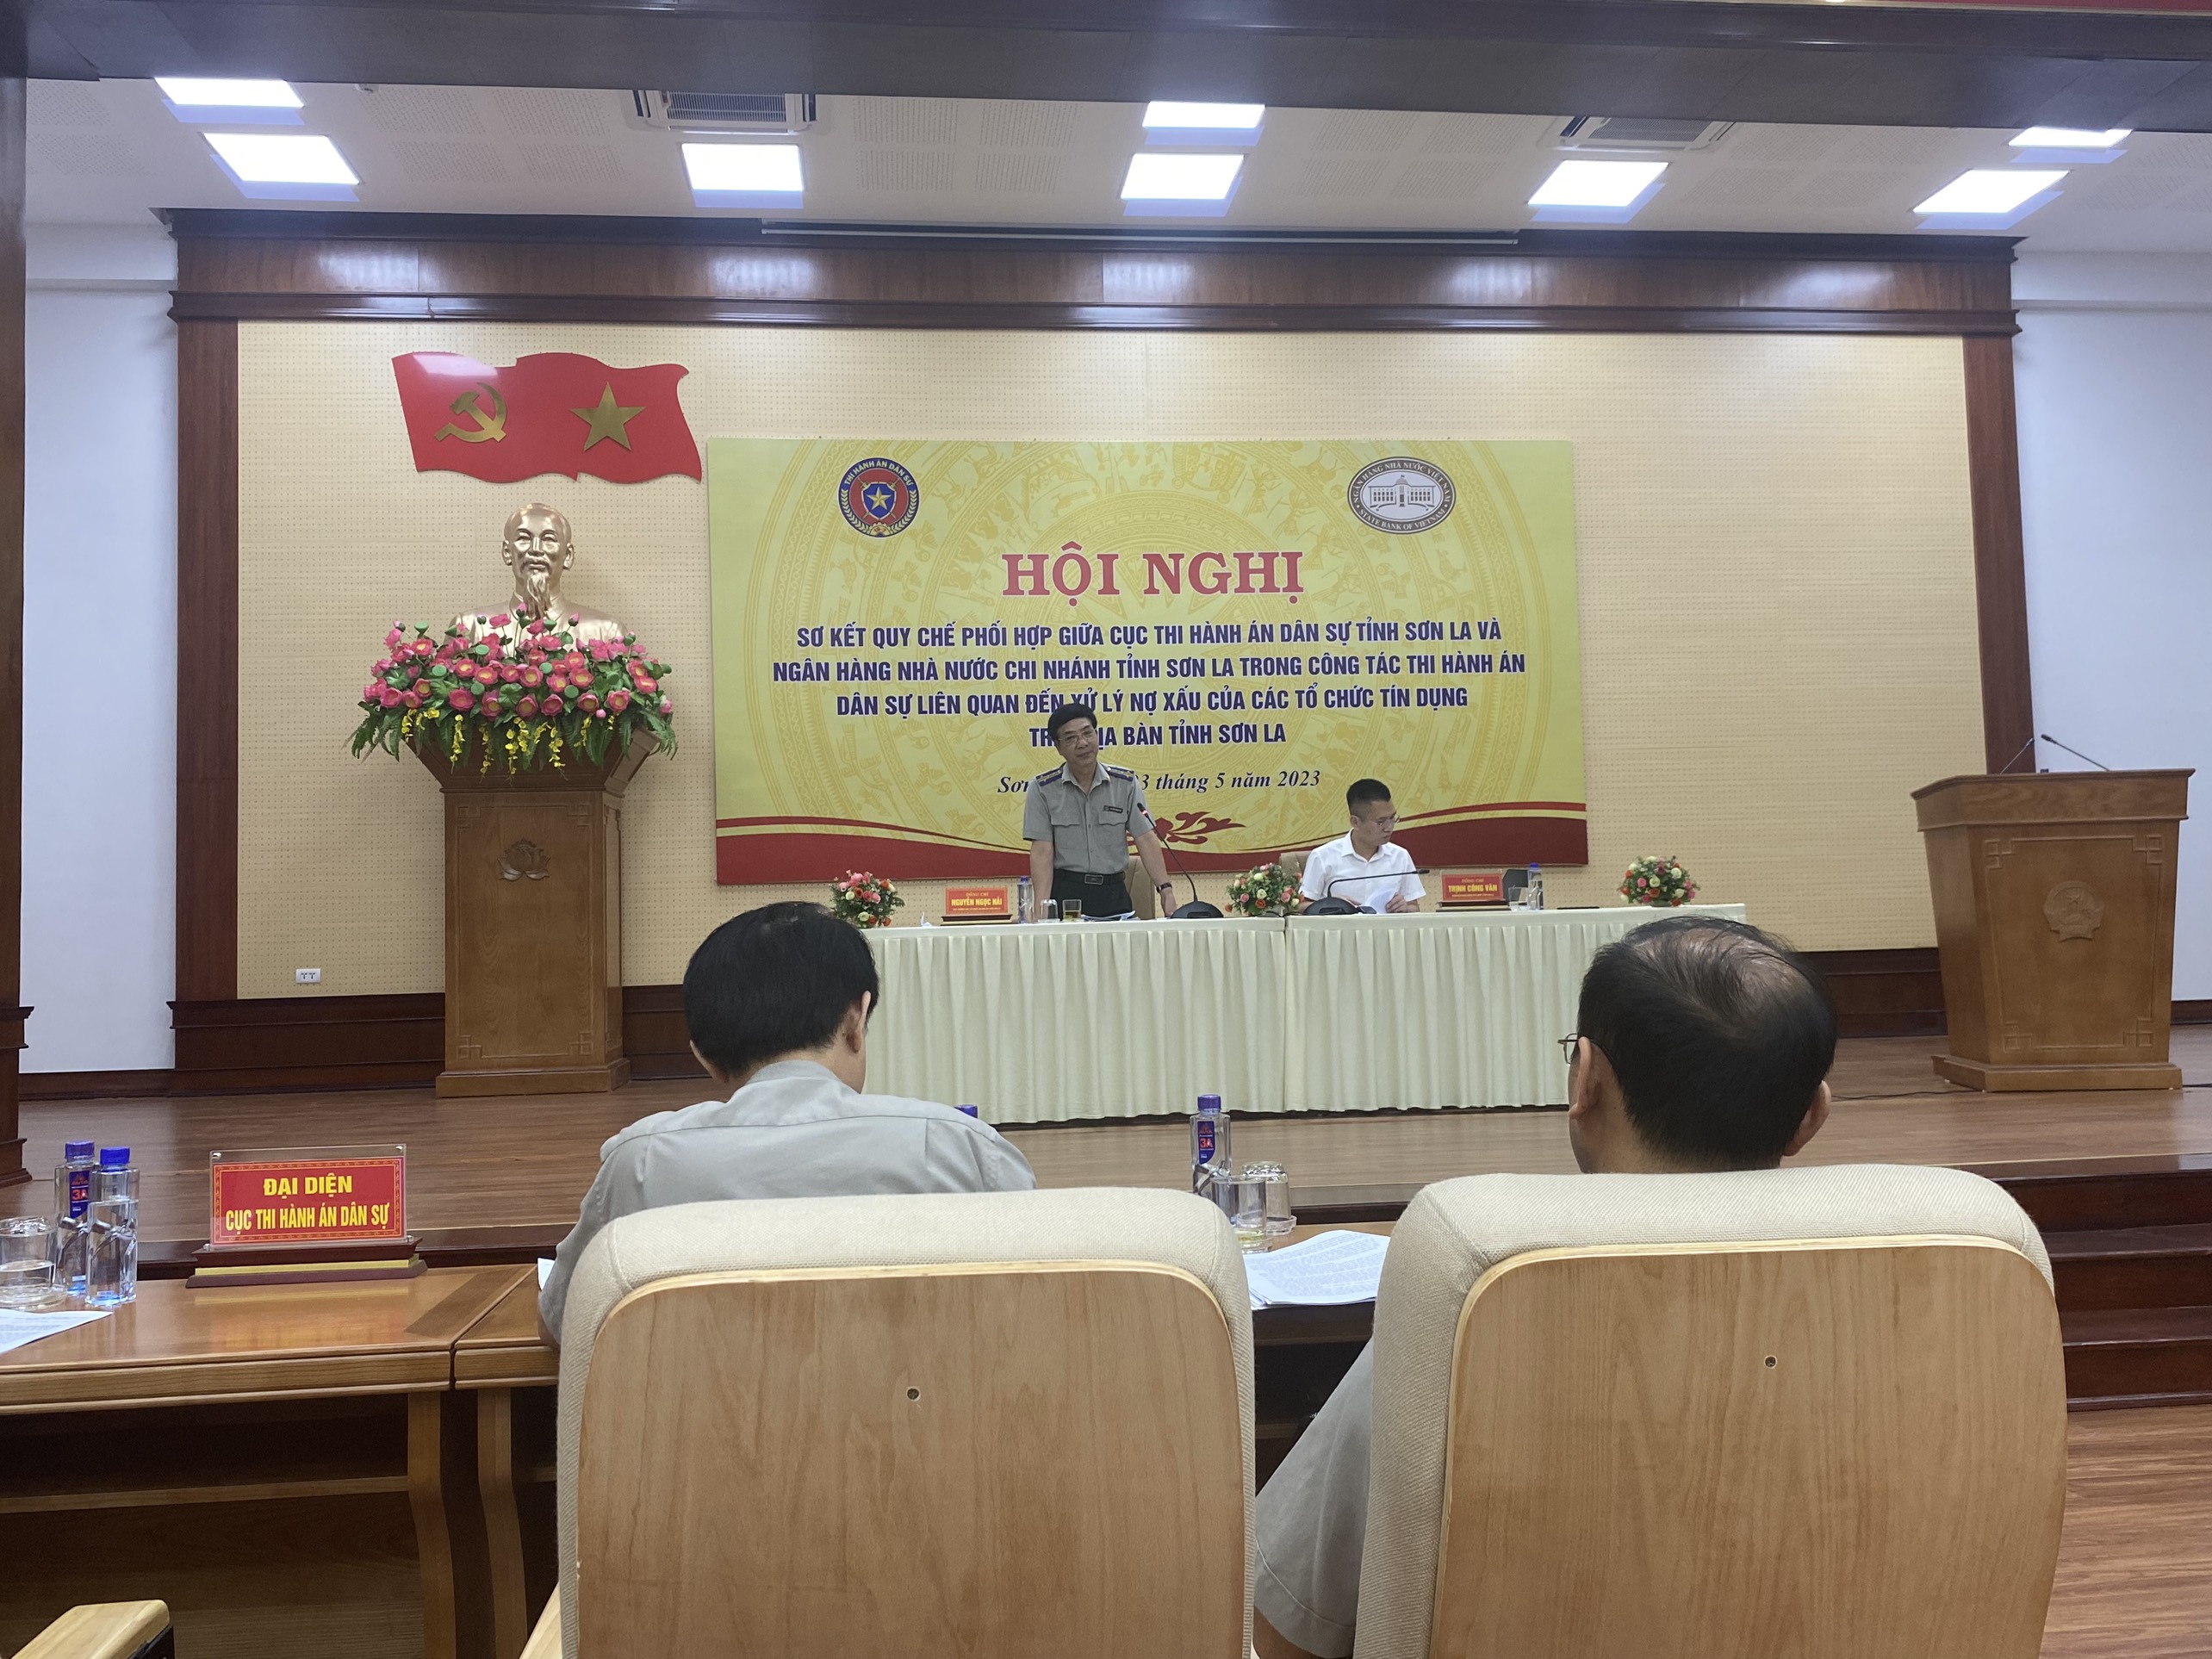 Cục THADS tỉnh phối hợp với NHNN Chi nhánh tỉnh Sơn La tổ chức hội nghị sơ kết thực hiện quy chế phối hợp 9